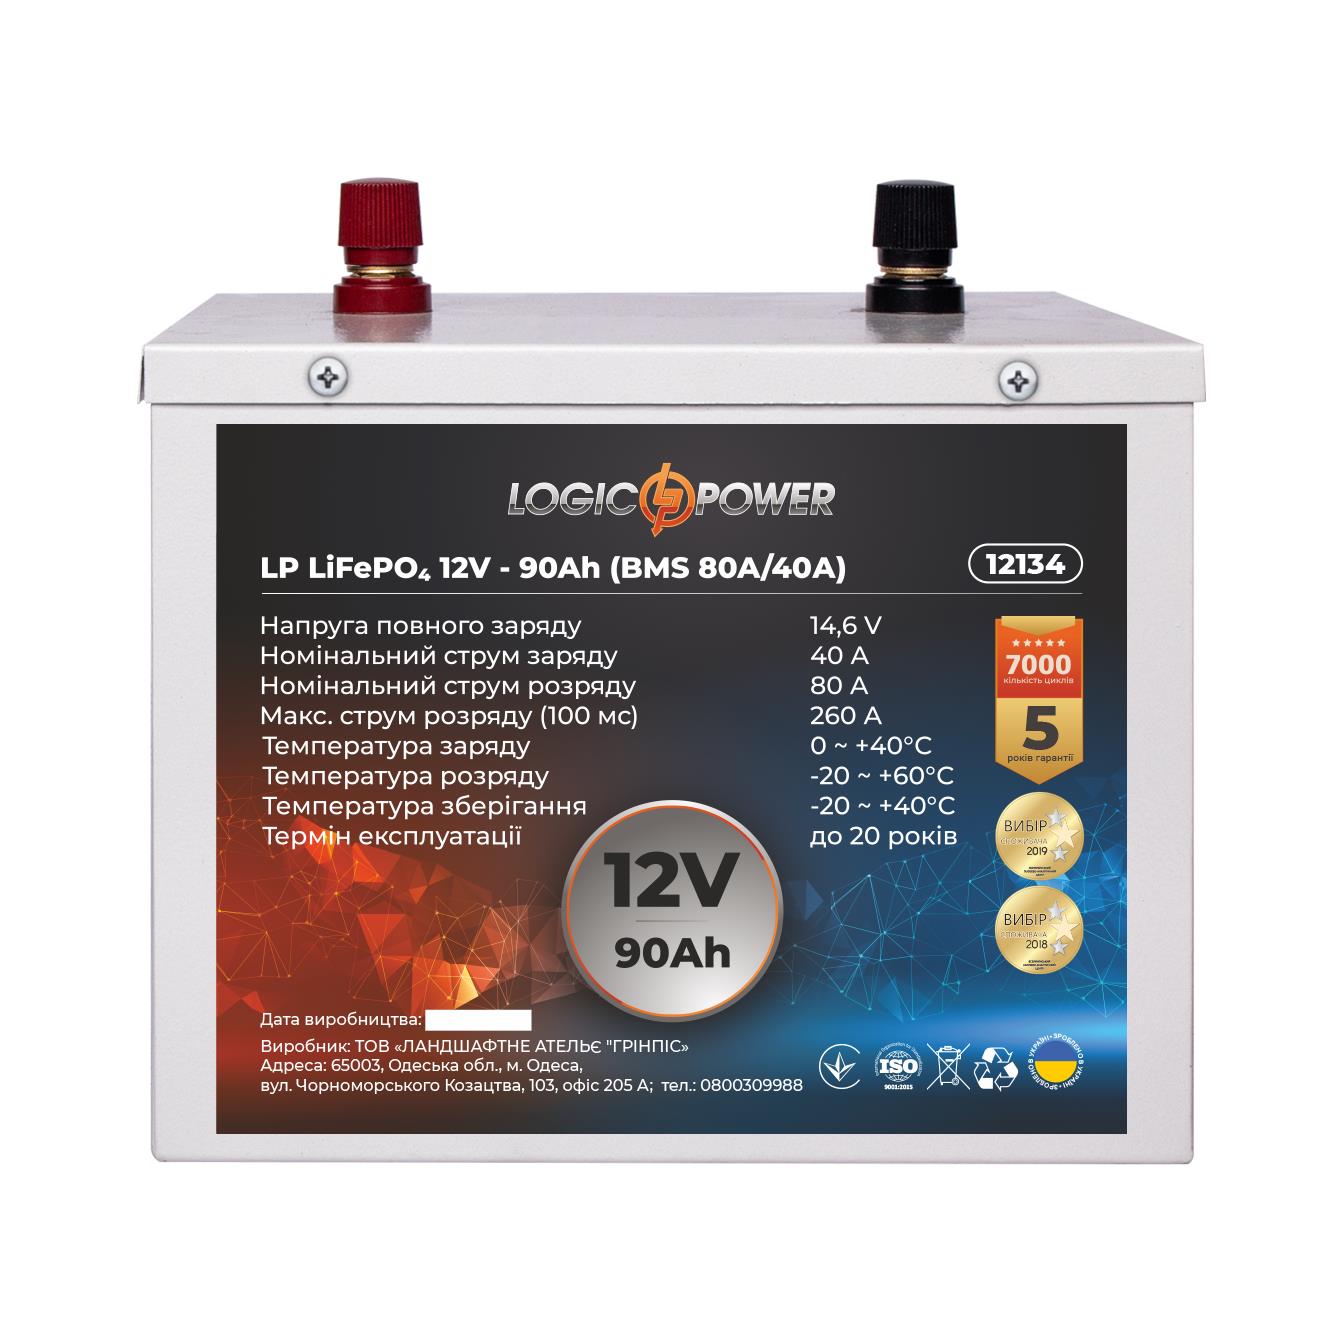 Аккумулятор литий-железо-фосфатный LogicPower LP LiFePO4 12V - 90 Ah (BMS 80A/40A) металл (12134) в интернет-магазине, главное фото